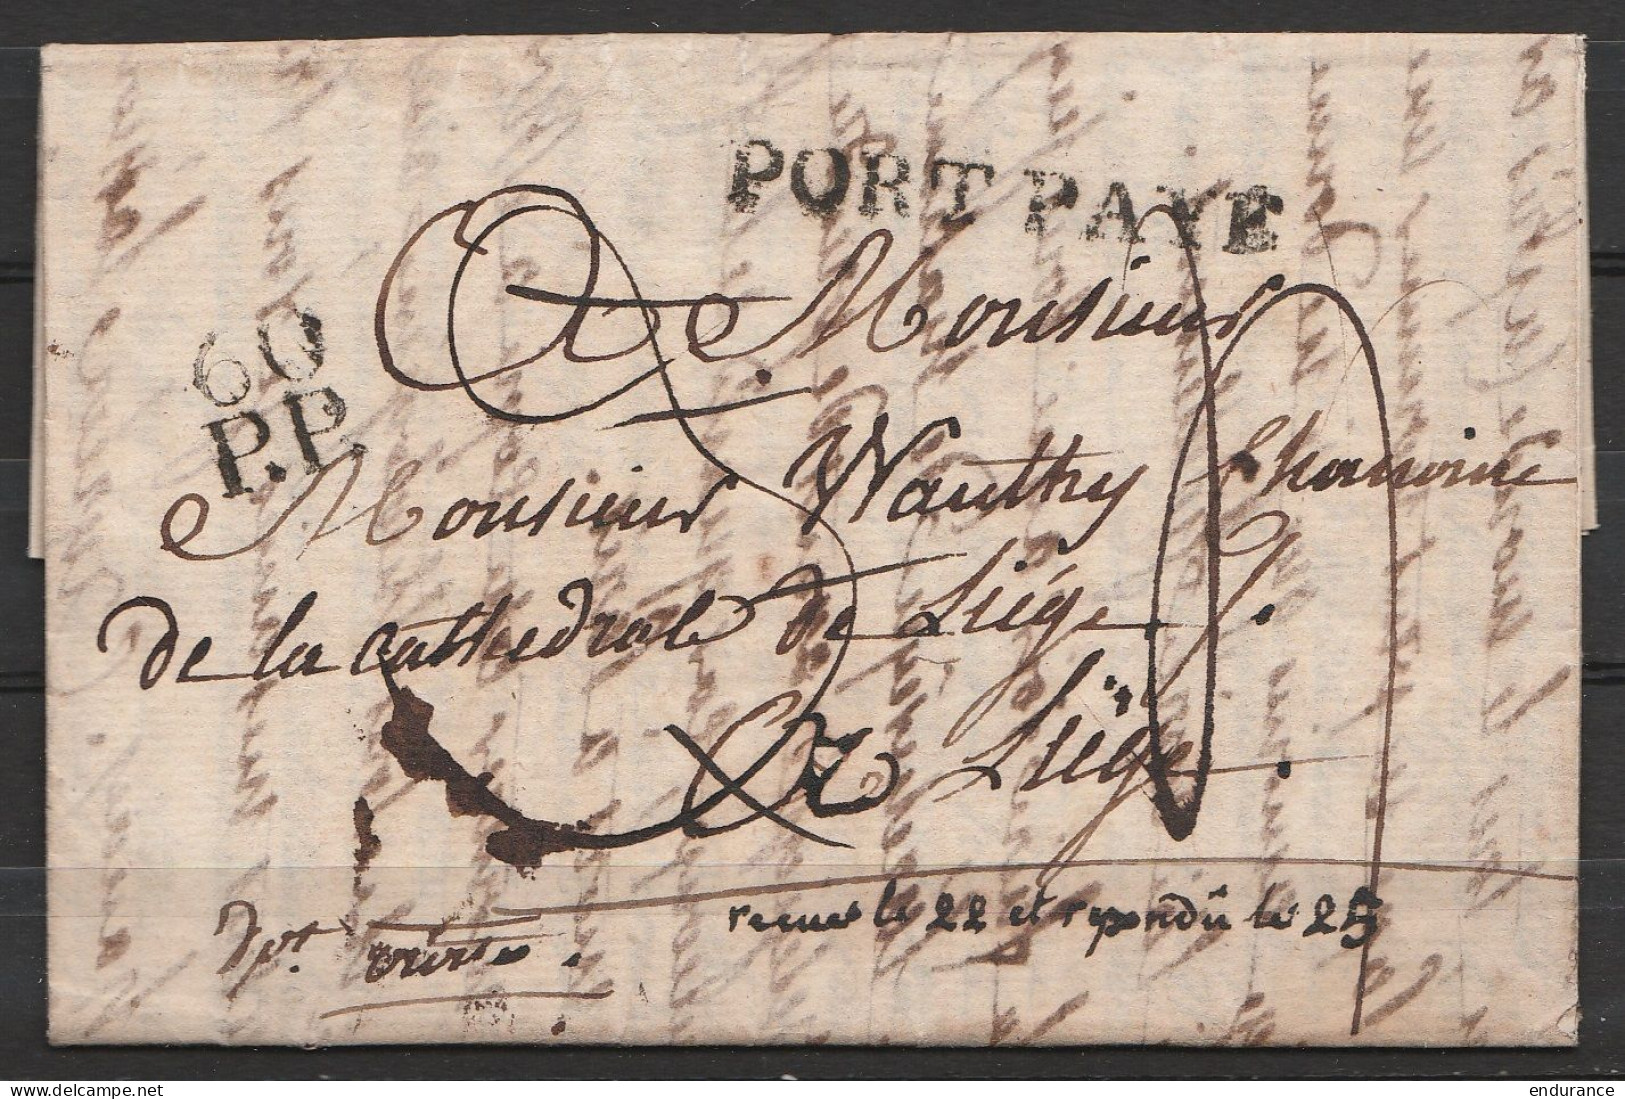 L. Datée 18 Août 1814 Signée De L'Evêque De Liège à PARIS Pour Chanoine De La Cathédrale De Liège - Griffe "PORT PAYE" + - 1794-1814 (Französische Besatzung)